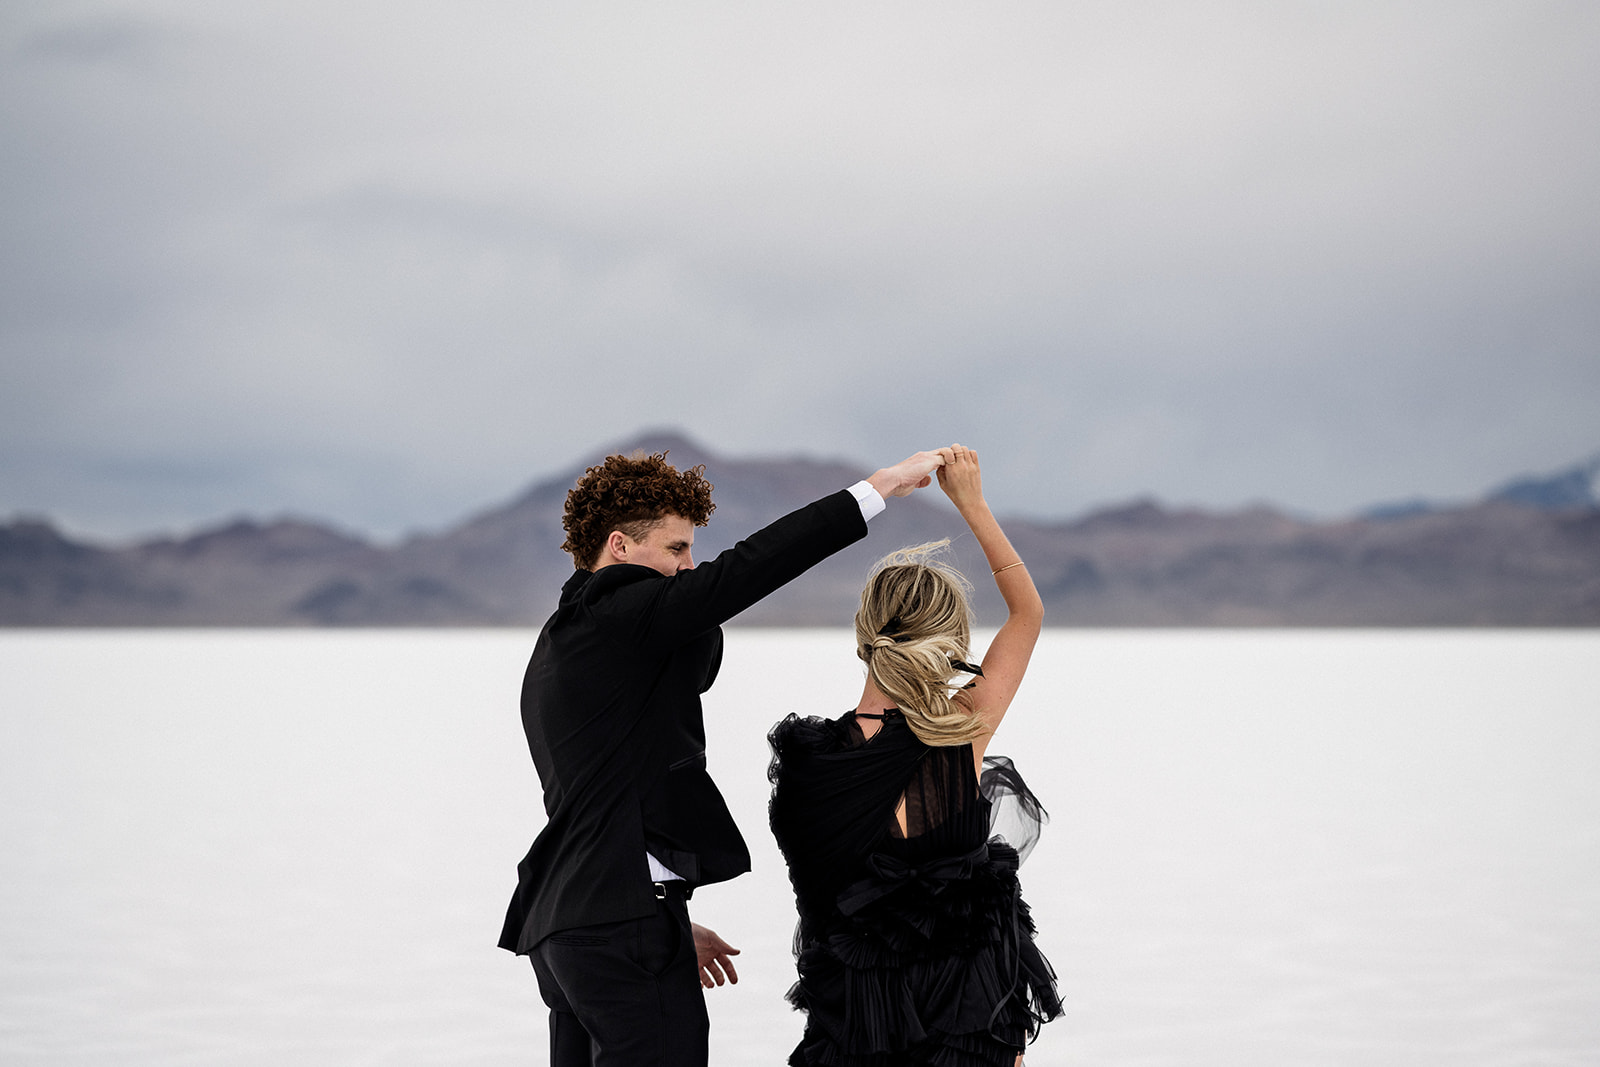 Dance of love captured during engagement session at Bonneville Salt Flats, Utah.